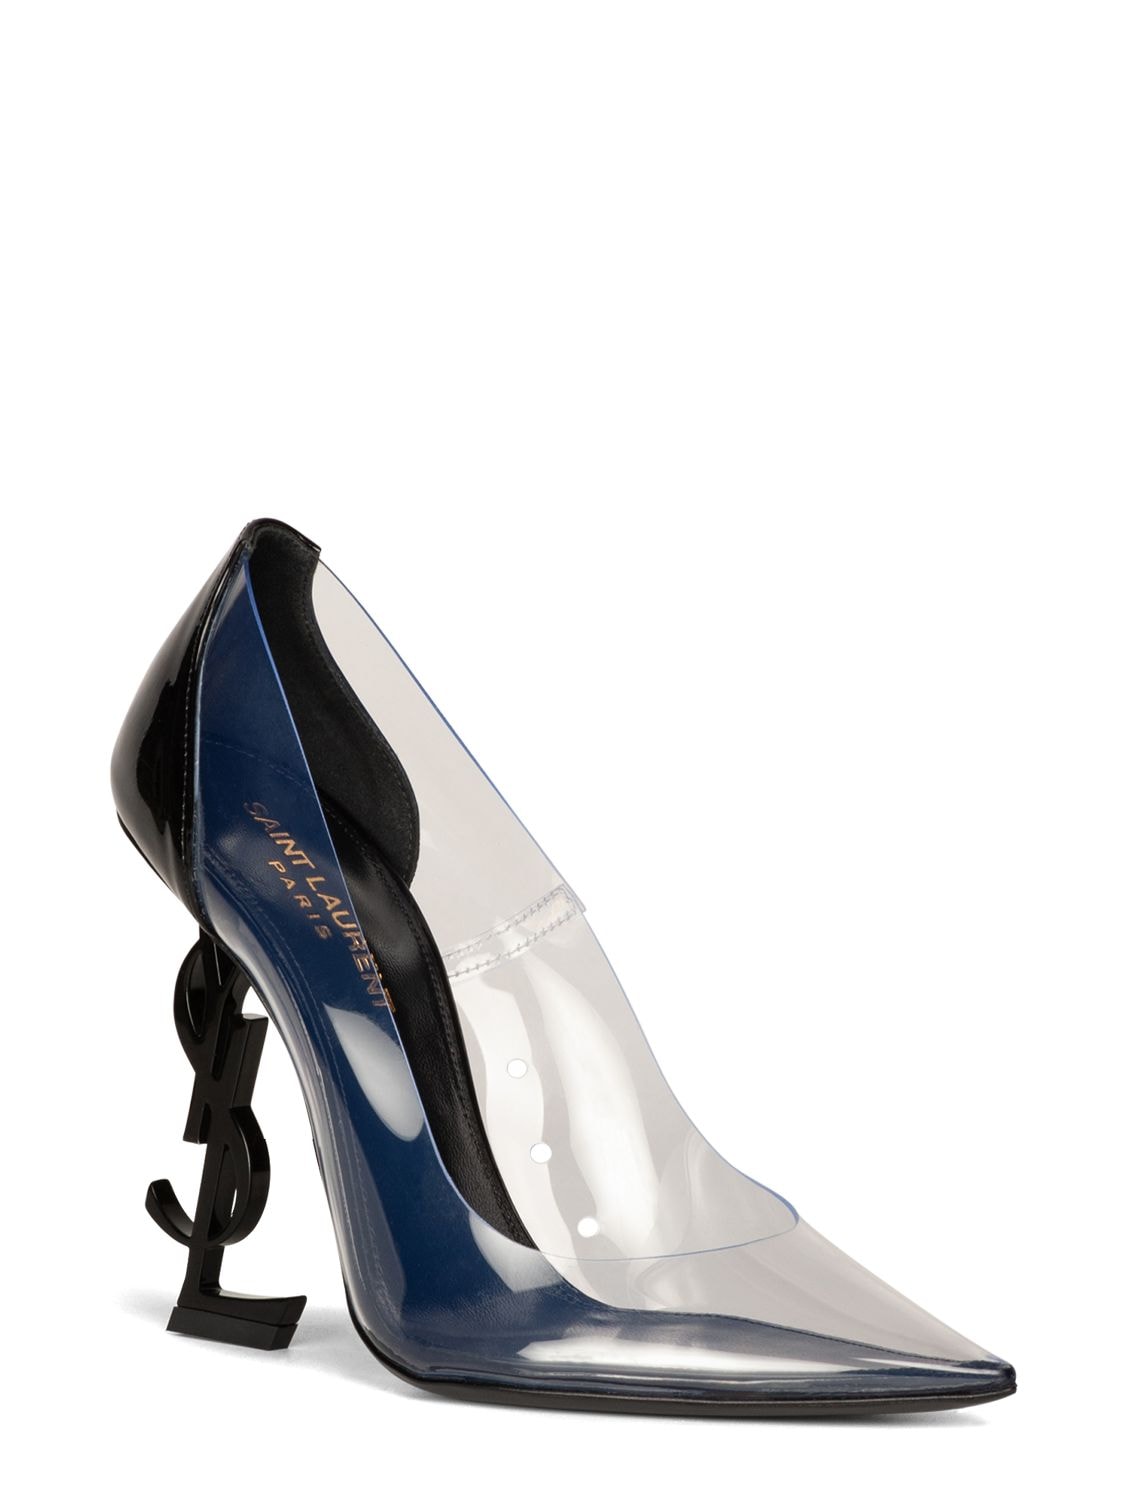 Saint Laurent 'Opyum' decorative stiletto heel pumps, Women's Shoes